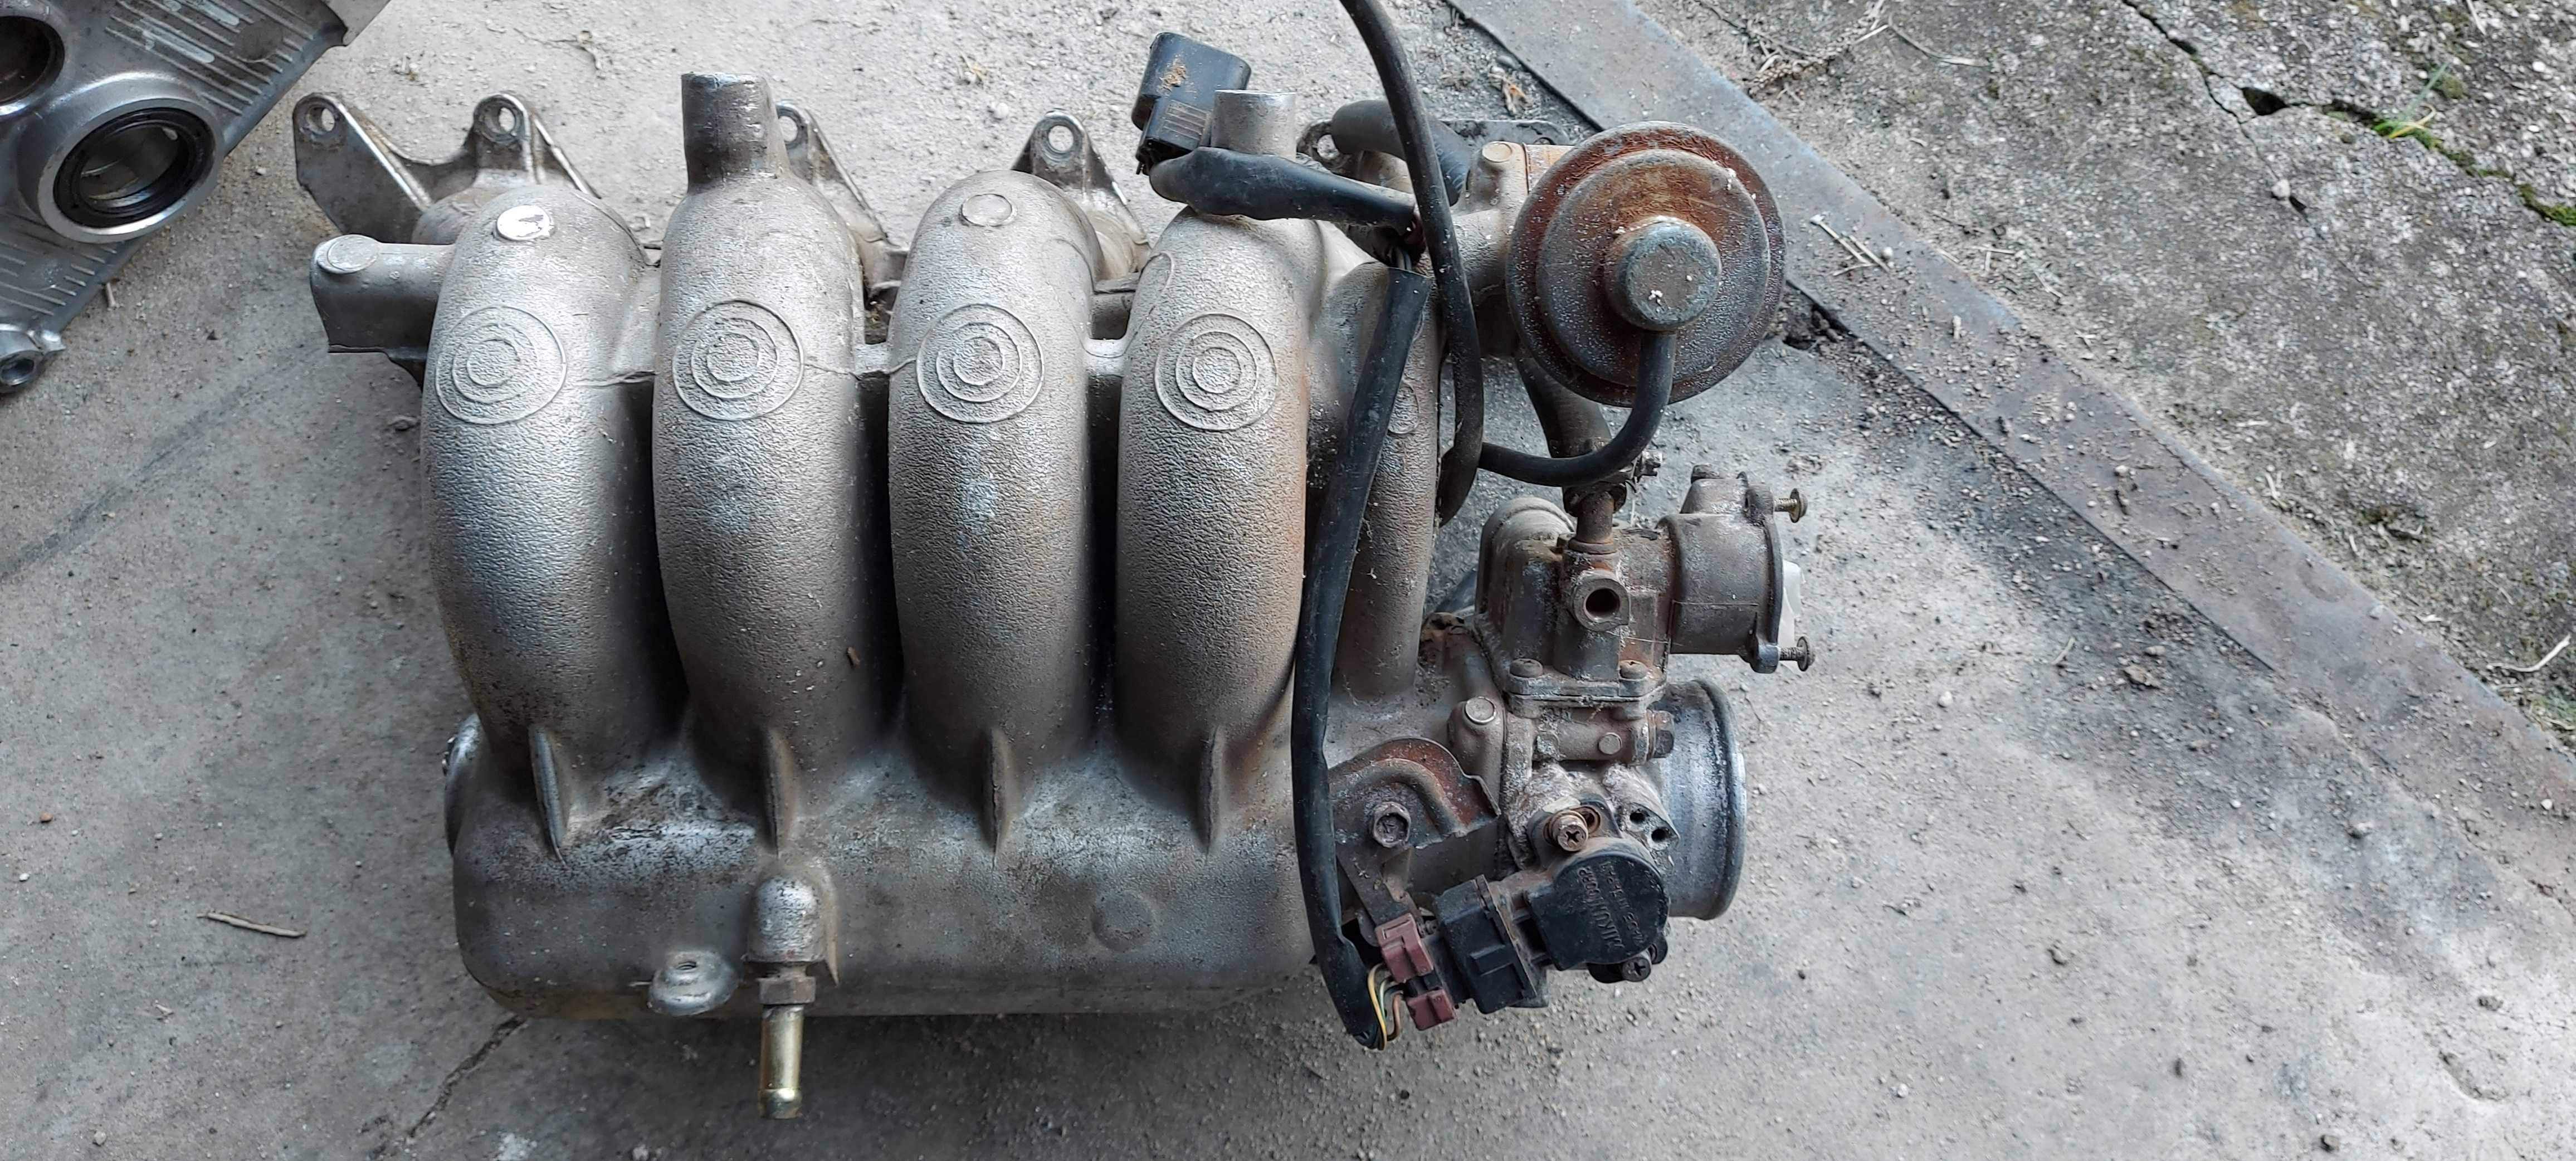 Части за Спейс рънър 16 клапана от двигател 4G63